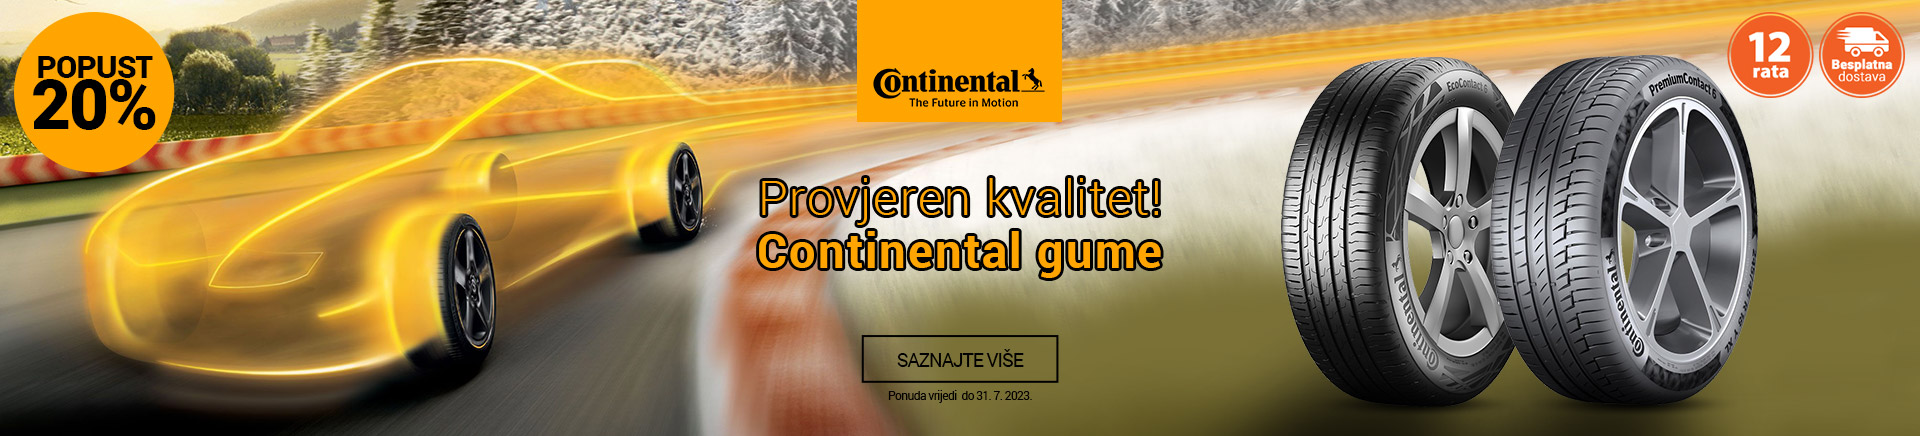 CG Continental gume provjeren kvalitet V2 MOBILE 380 X 436.jpg